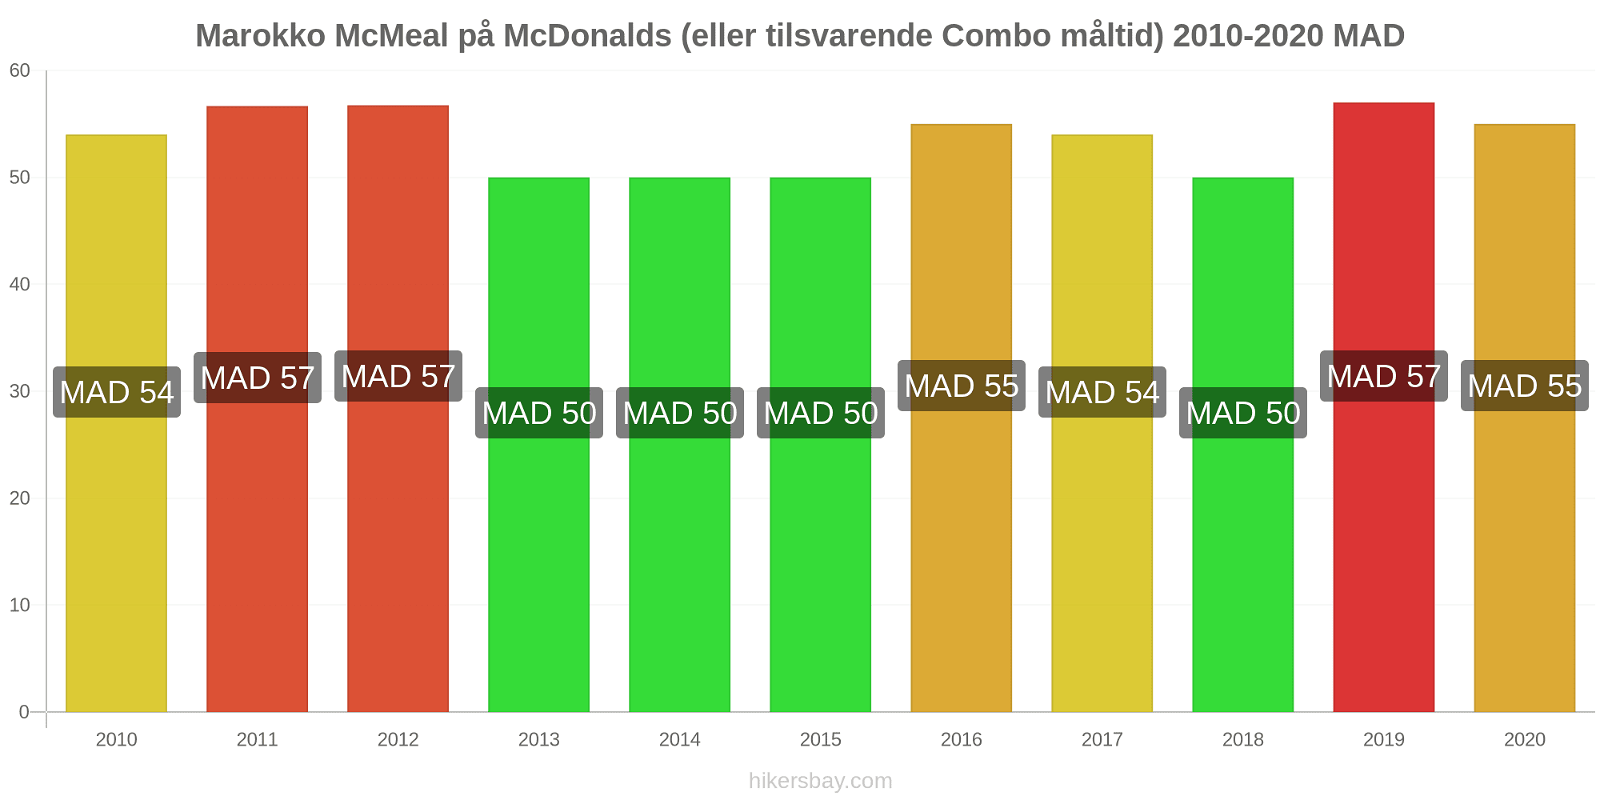 Marokko prisændringer McMeal på McDonalds (eller tilsvarende Combo måltid) hikersbay.com